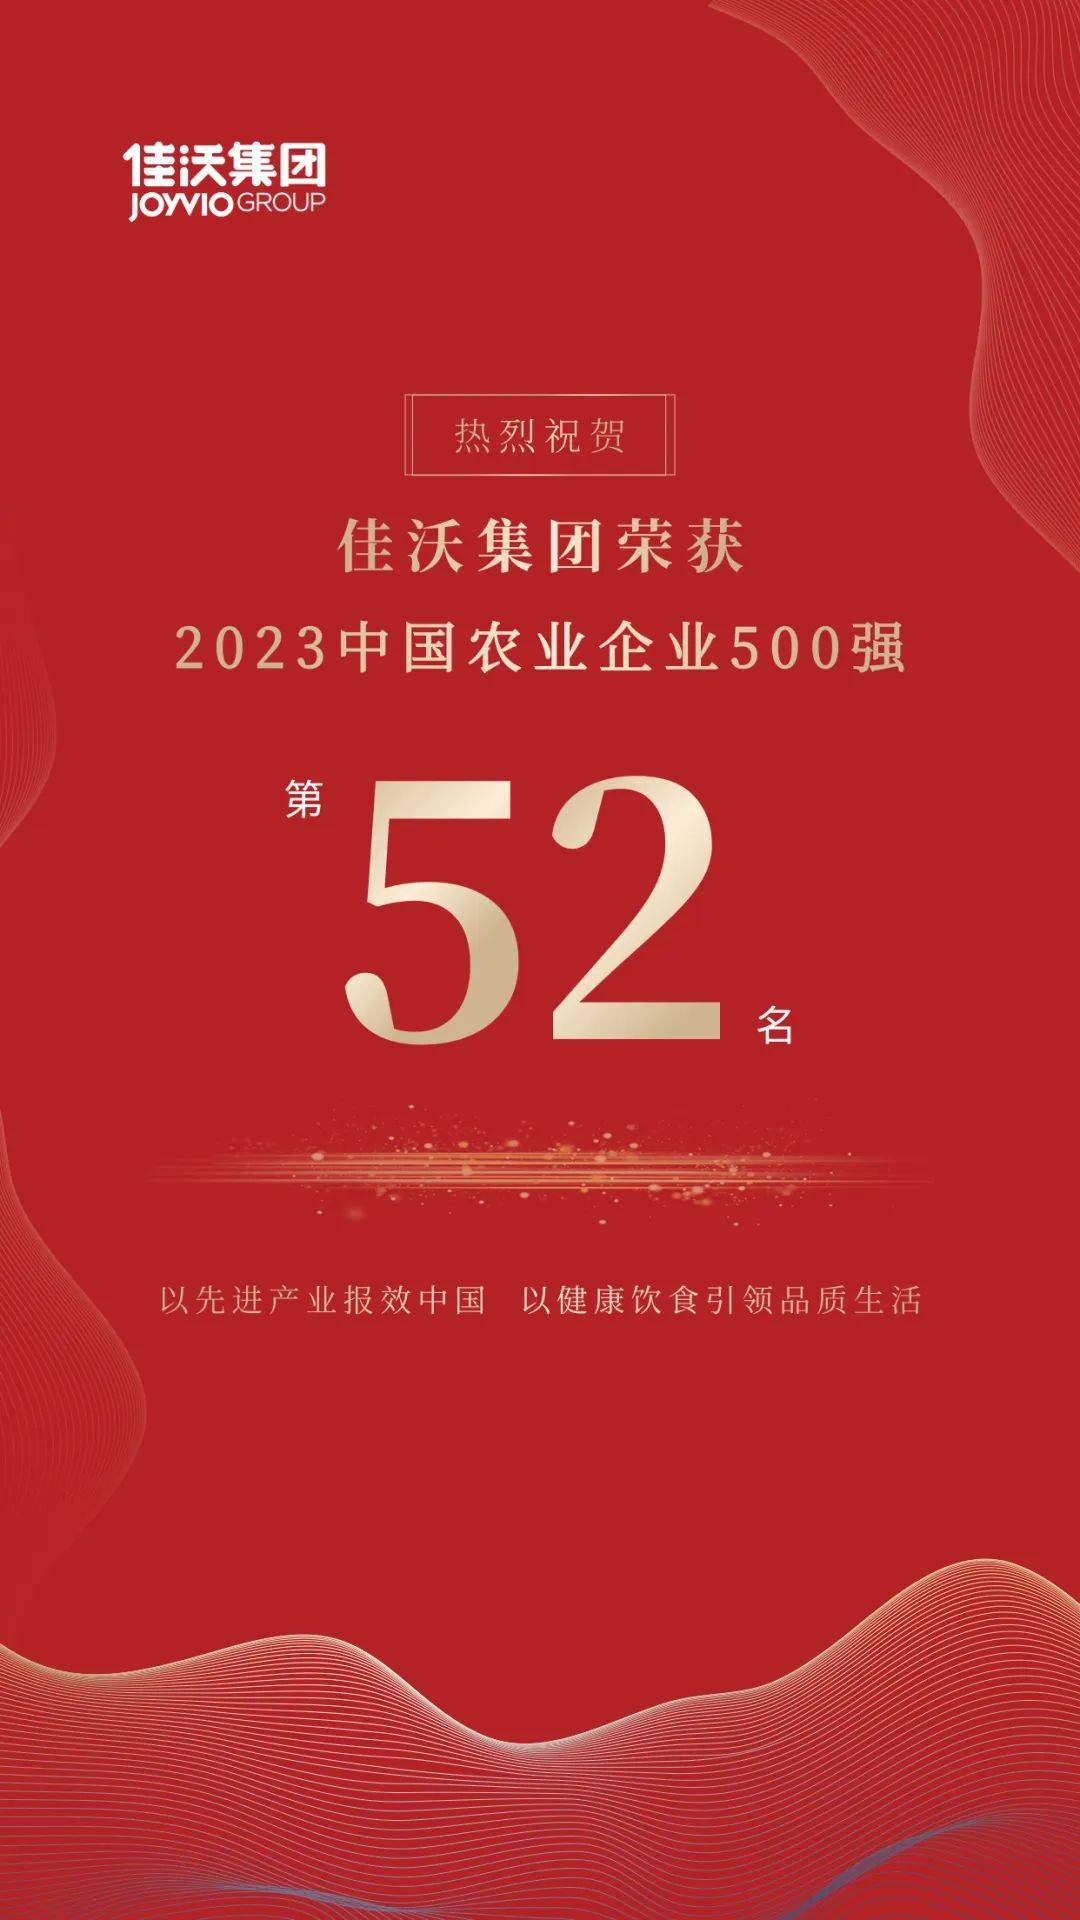 2023中国农业企业500强榜单发布，佳沃集团荣升至第52名